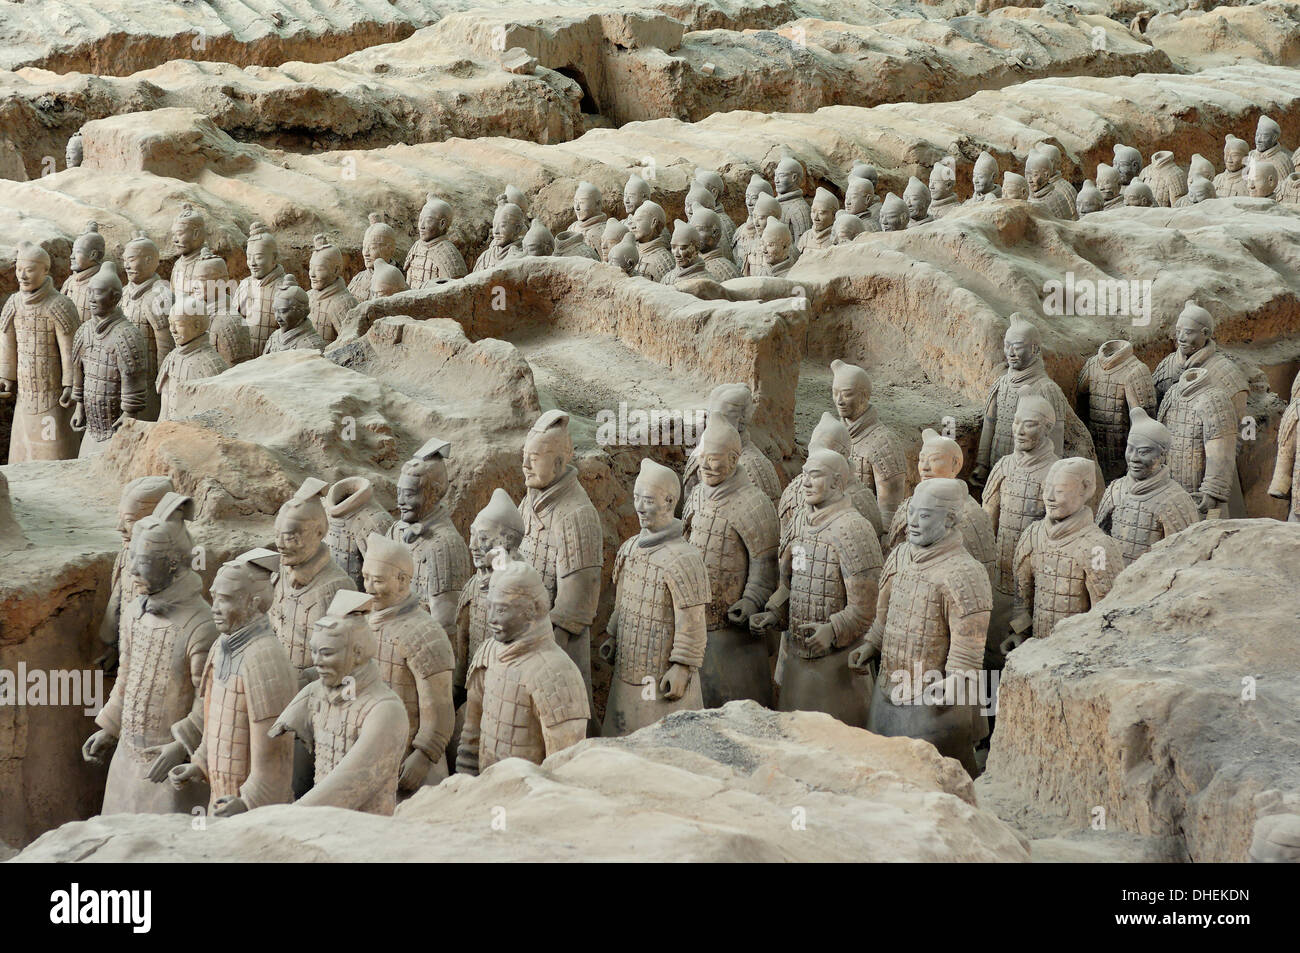 Esercito di Terracotta, custodito il primo imperatore della Cina Qin Shi Huangdi's Tomb, Xian, Lintong, Shaanxi, Cina, Asia Foto Stock